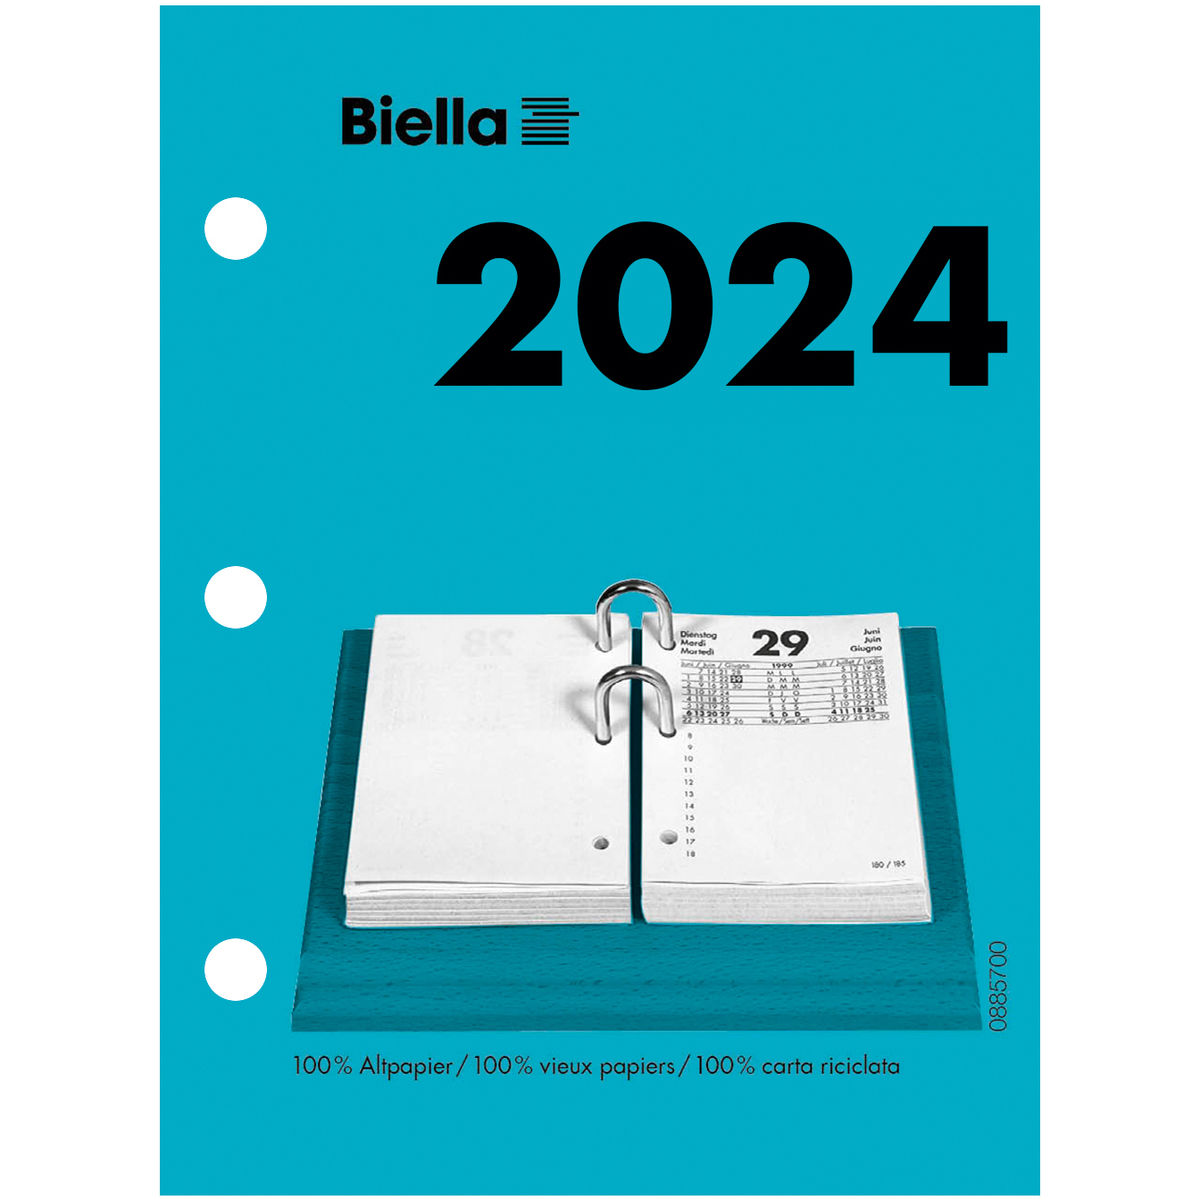 Acheter en ligne BIELLA Calendrier mural 2024 à bons prix et en